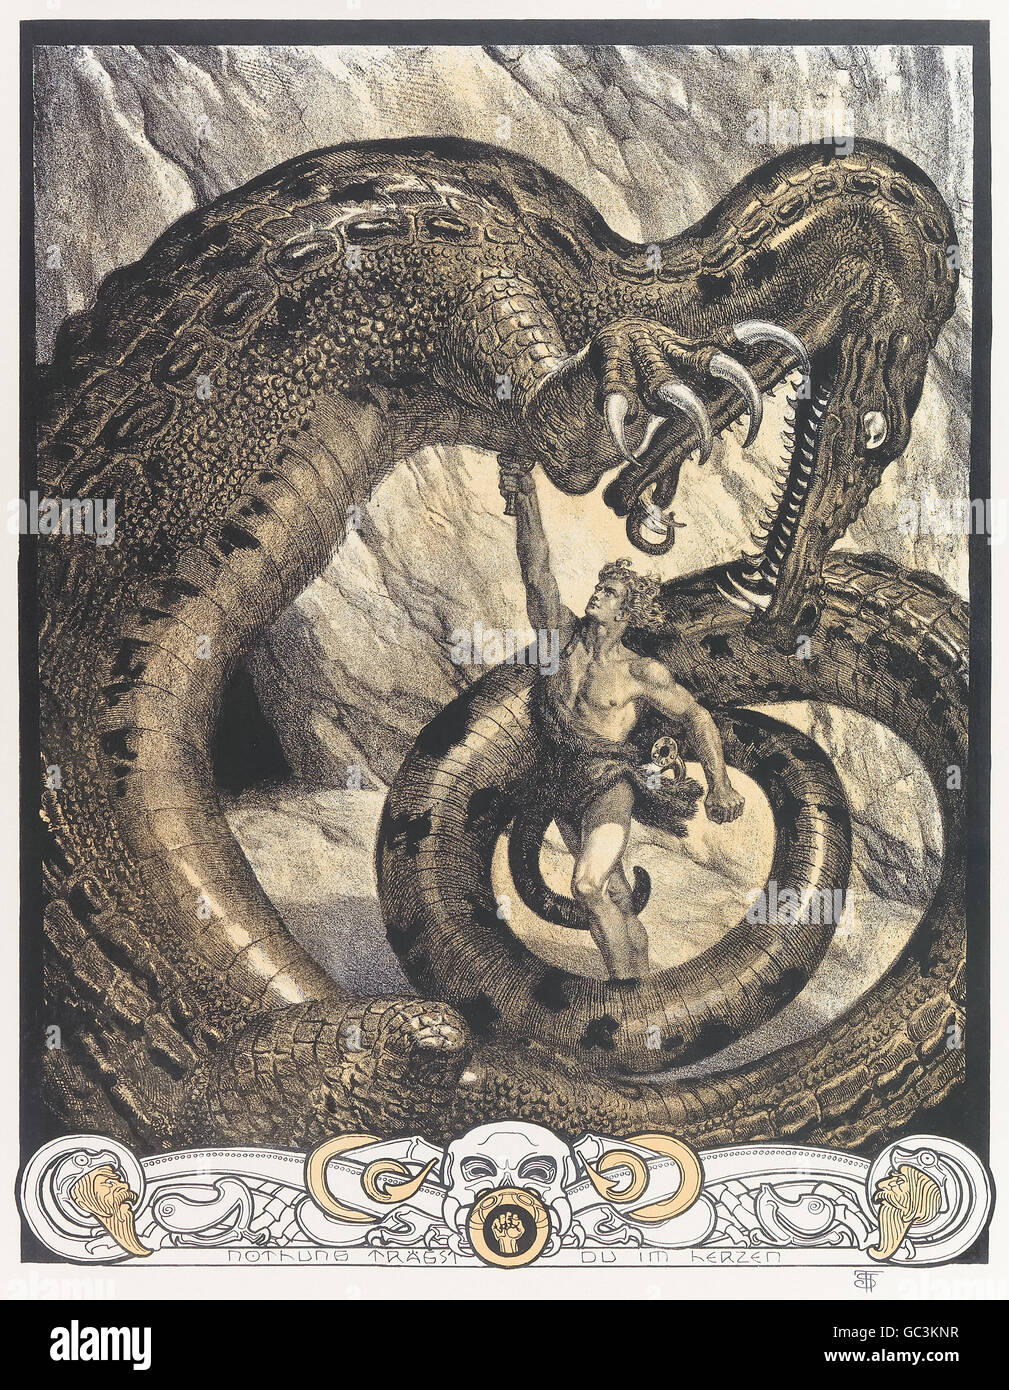 Franz Stassen (1869-1949) illustration pour "Der Ring des Nibelungen (Siegfried)" (l'Anneau du Nibelung : Partie 3 : Siegfried) de Richard Wagner (1813-1883). Le géant Fafner poignarde Siegfried qui a transformé en un dragon à l'épée Nothung. Voir la description pour plus d'informations. Banque D'Images